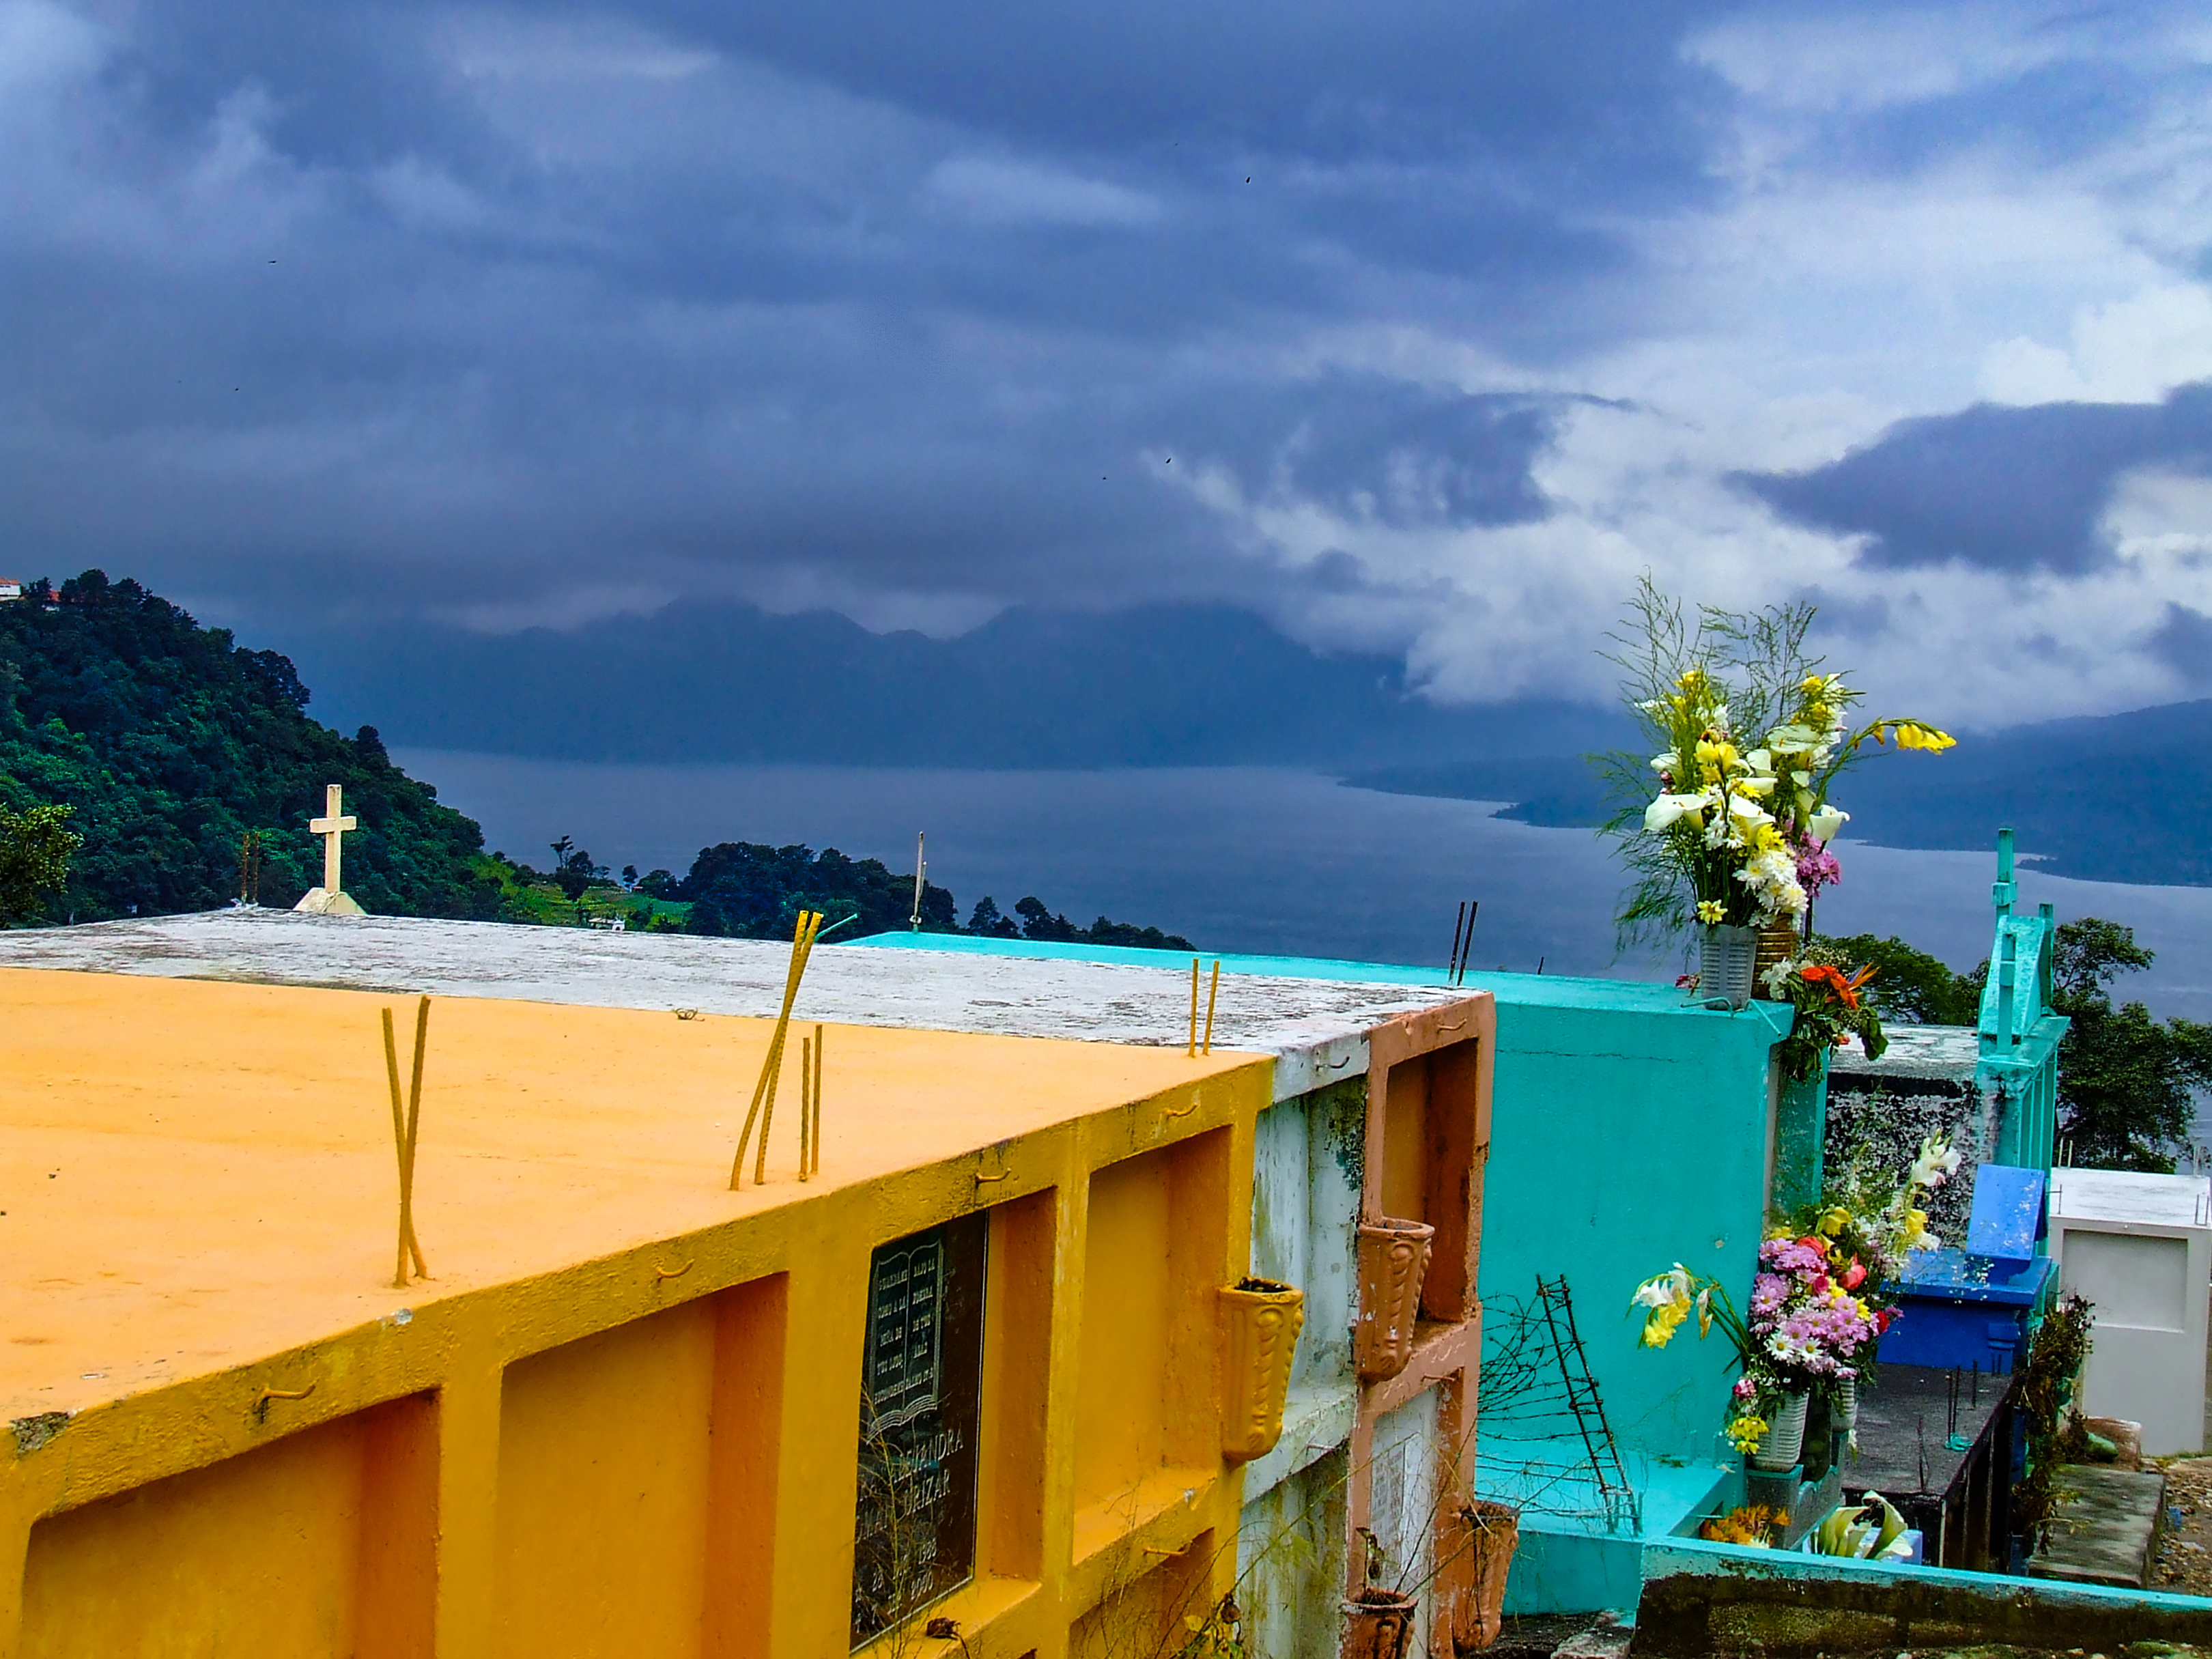 Viendo hacia el lago Cementerio de Sololá, Departamento de Sololá. Guatemala